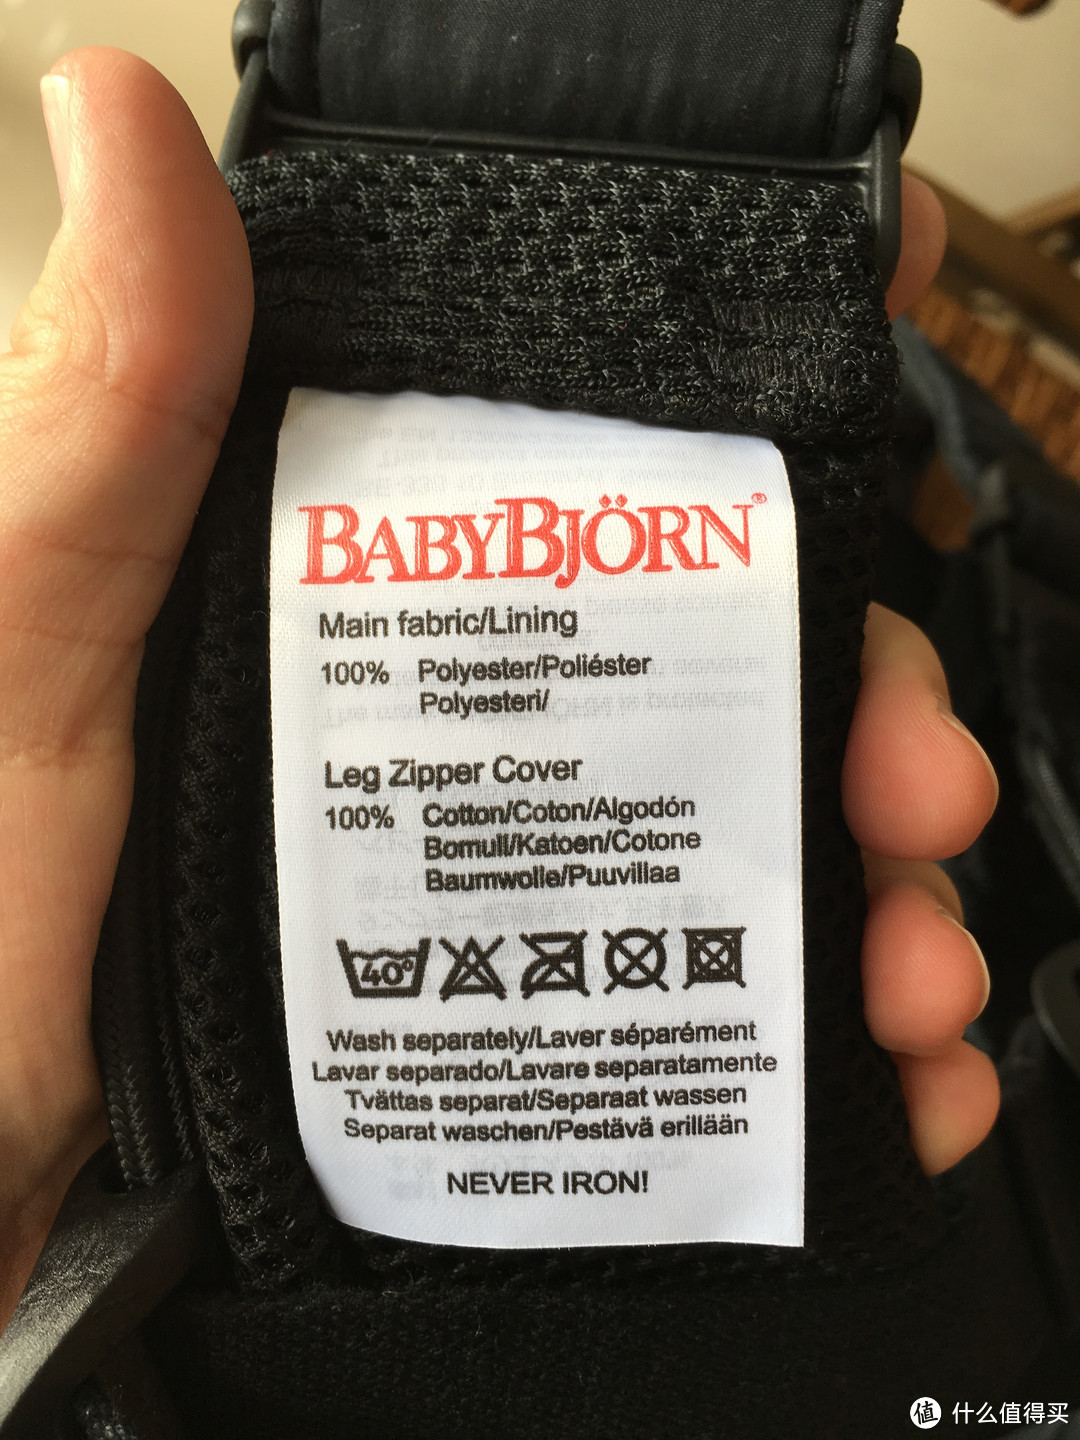 #本站首晒# 大妈种的毒，只能靠买买买：BABYBJORN CARRIER ONE AIR 婴儿背带